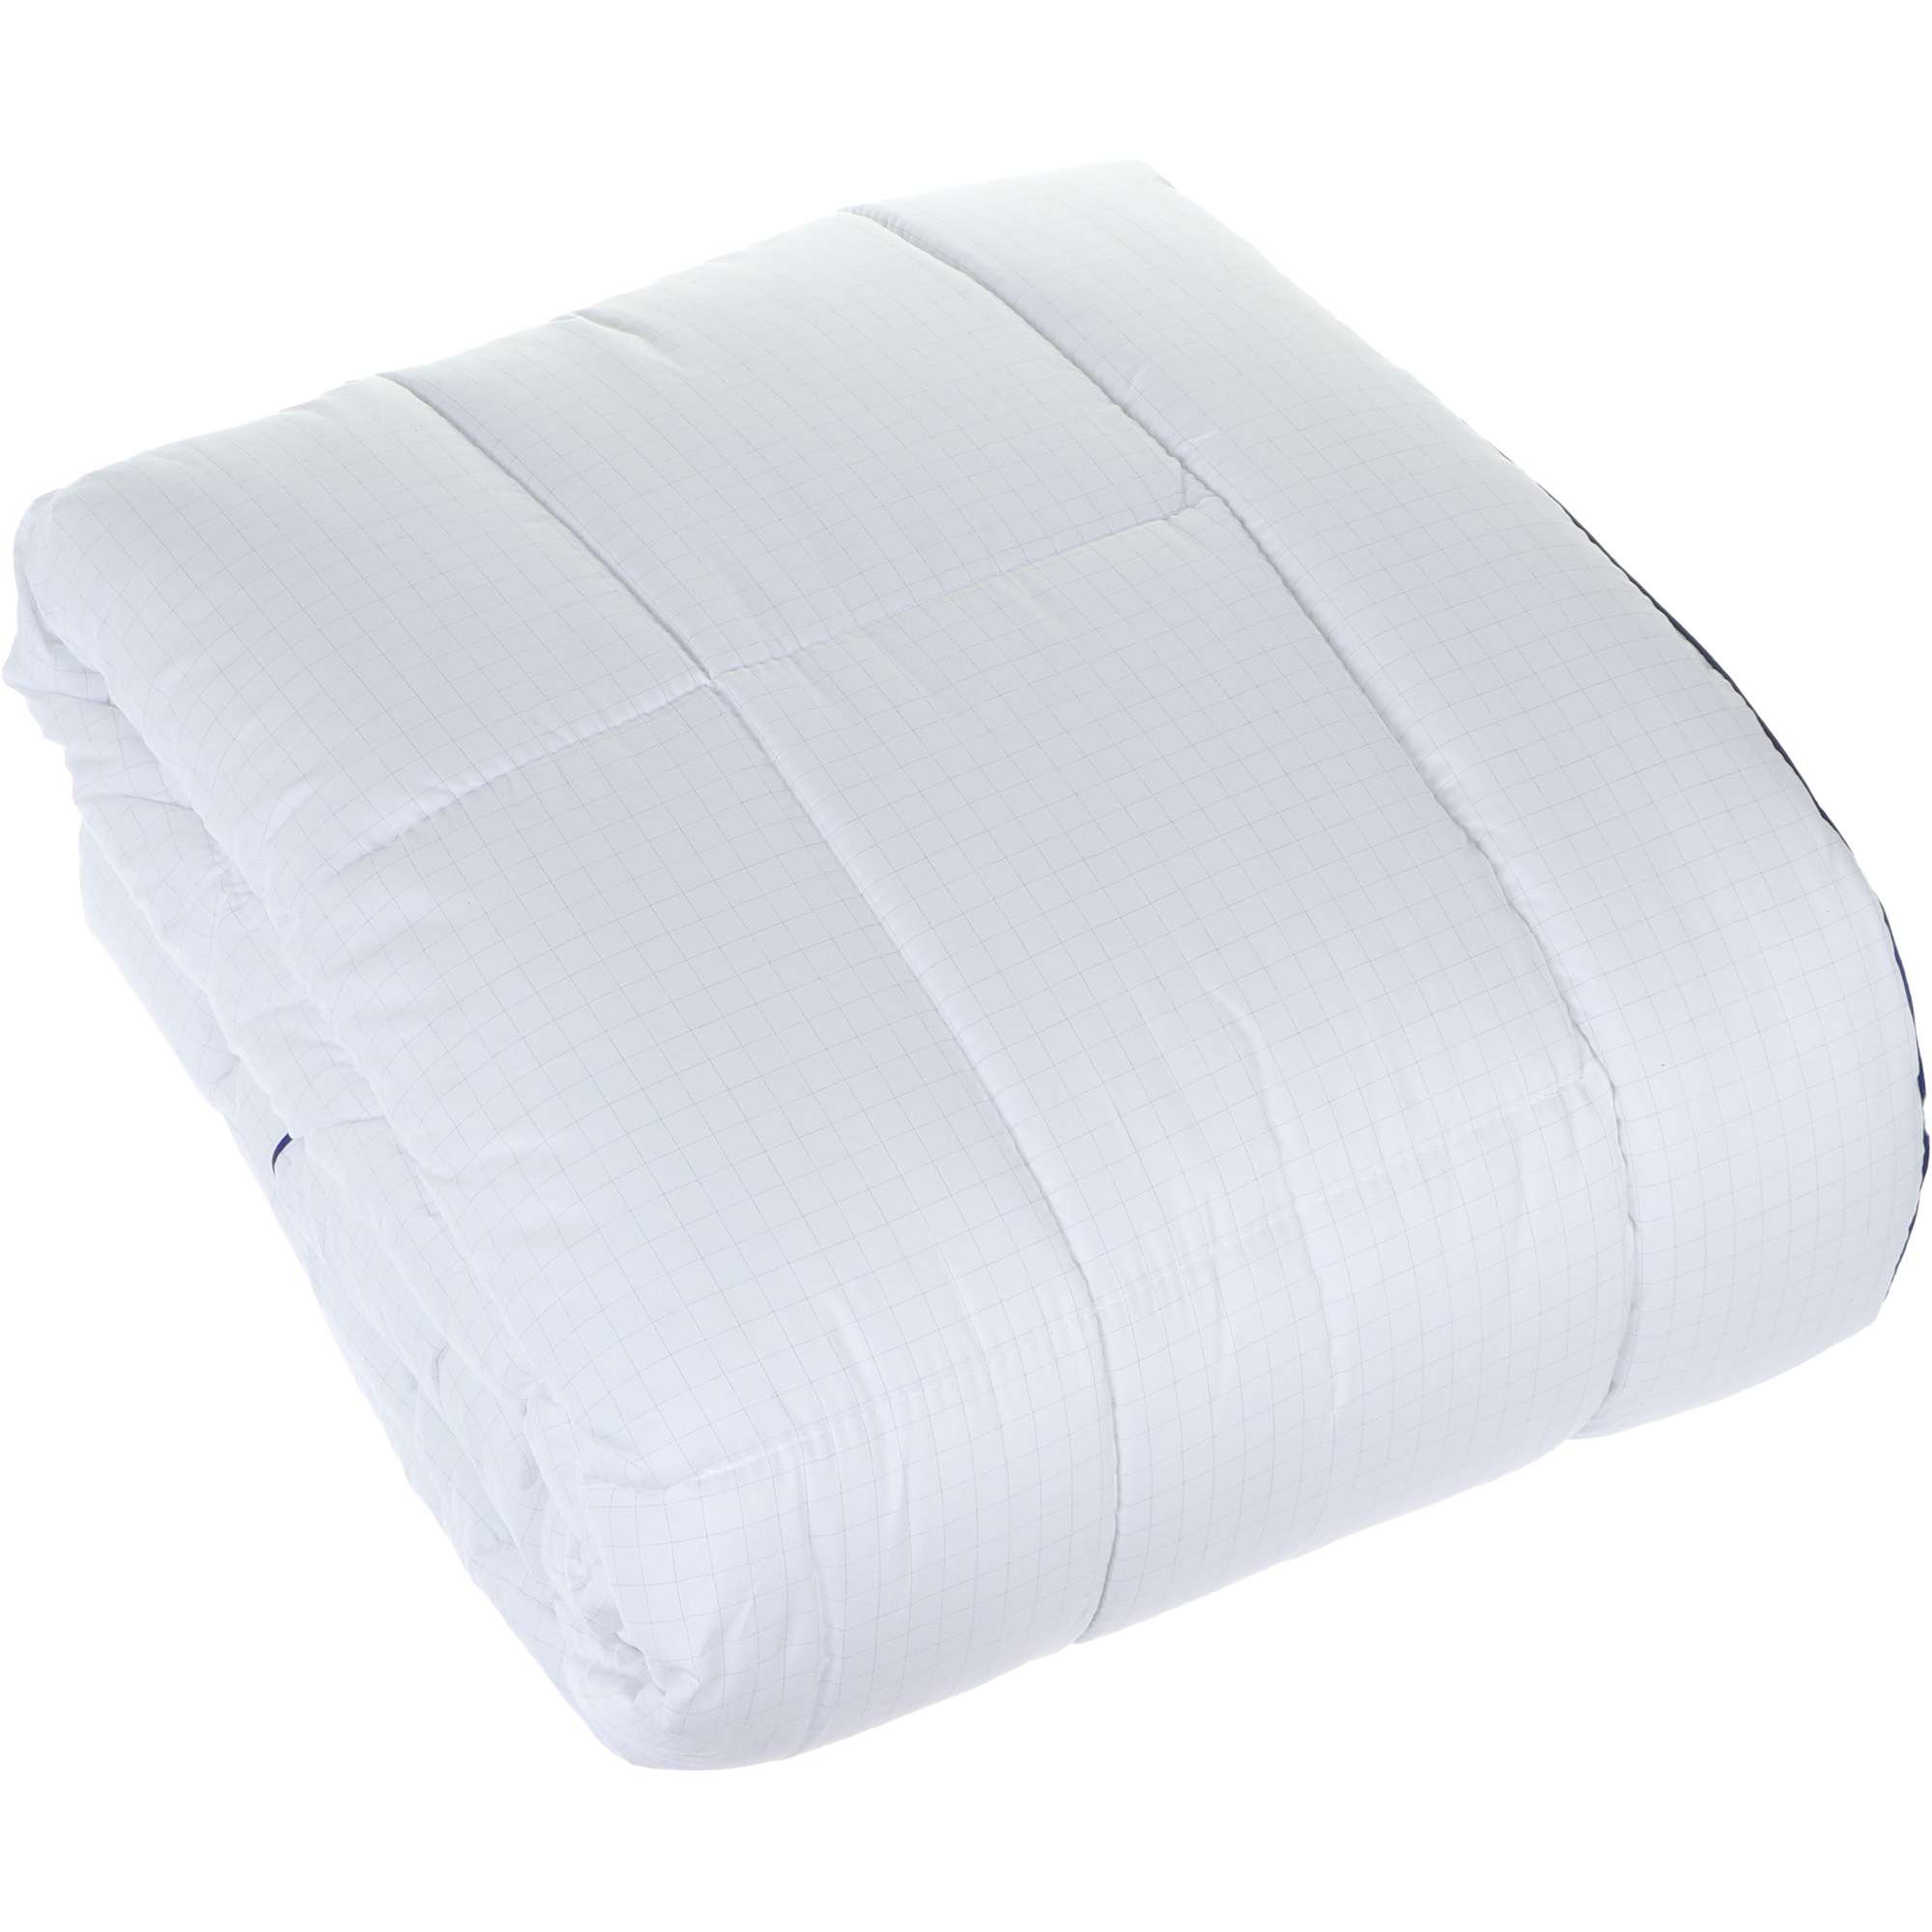 Одеяло Medsleep Nubi белое 200х210 см, цвет белый - фото 6